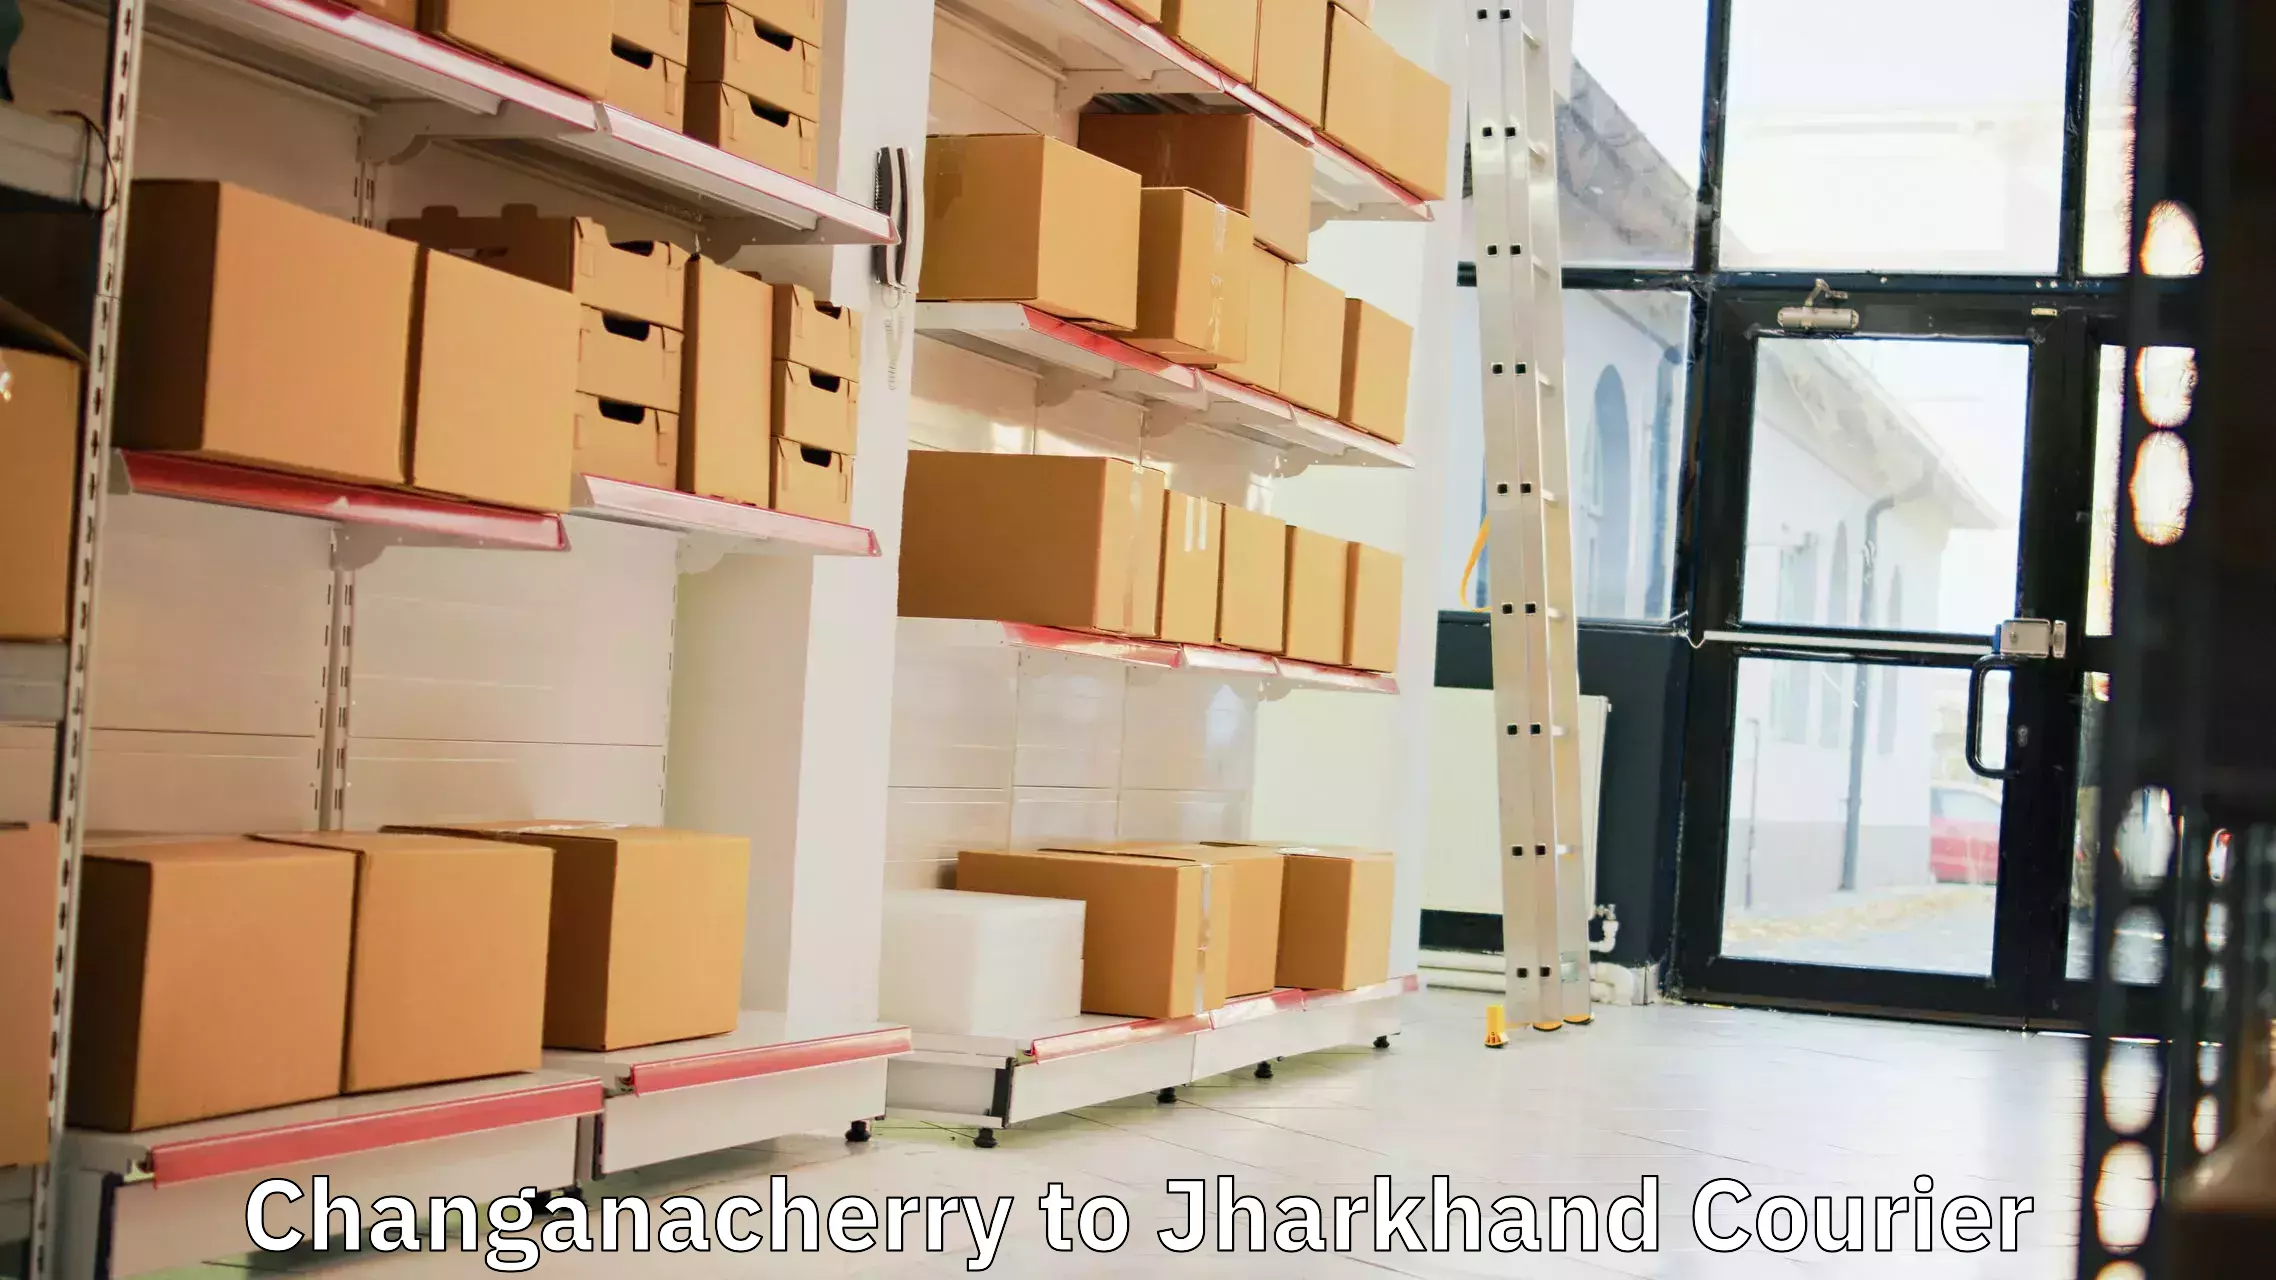 Regular parcel service Changanacherry to Chakradharpur